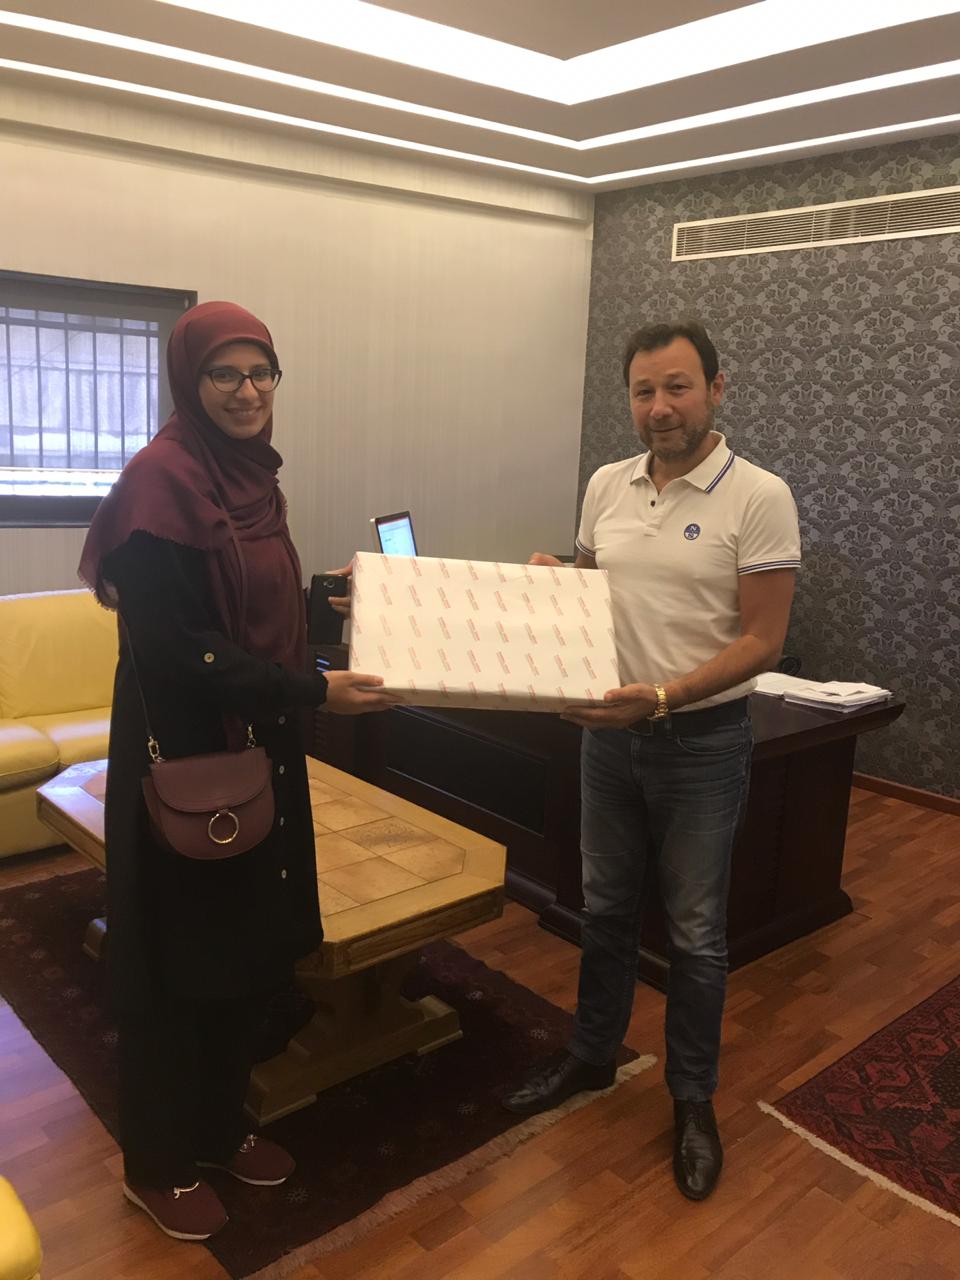 تقديم جائزة المرحوم الحاج محمد رمال (ابو عثمان) للطالبة المتفوقة الأولى في بلدة الطيبة للعام 2019